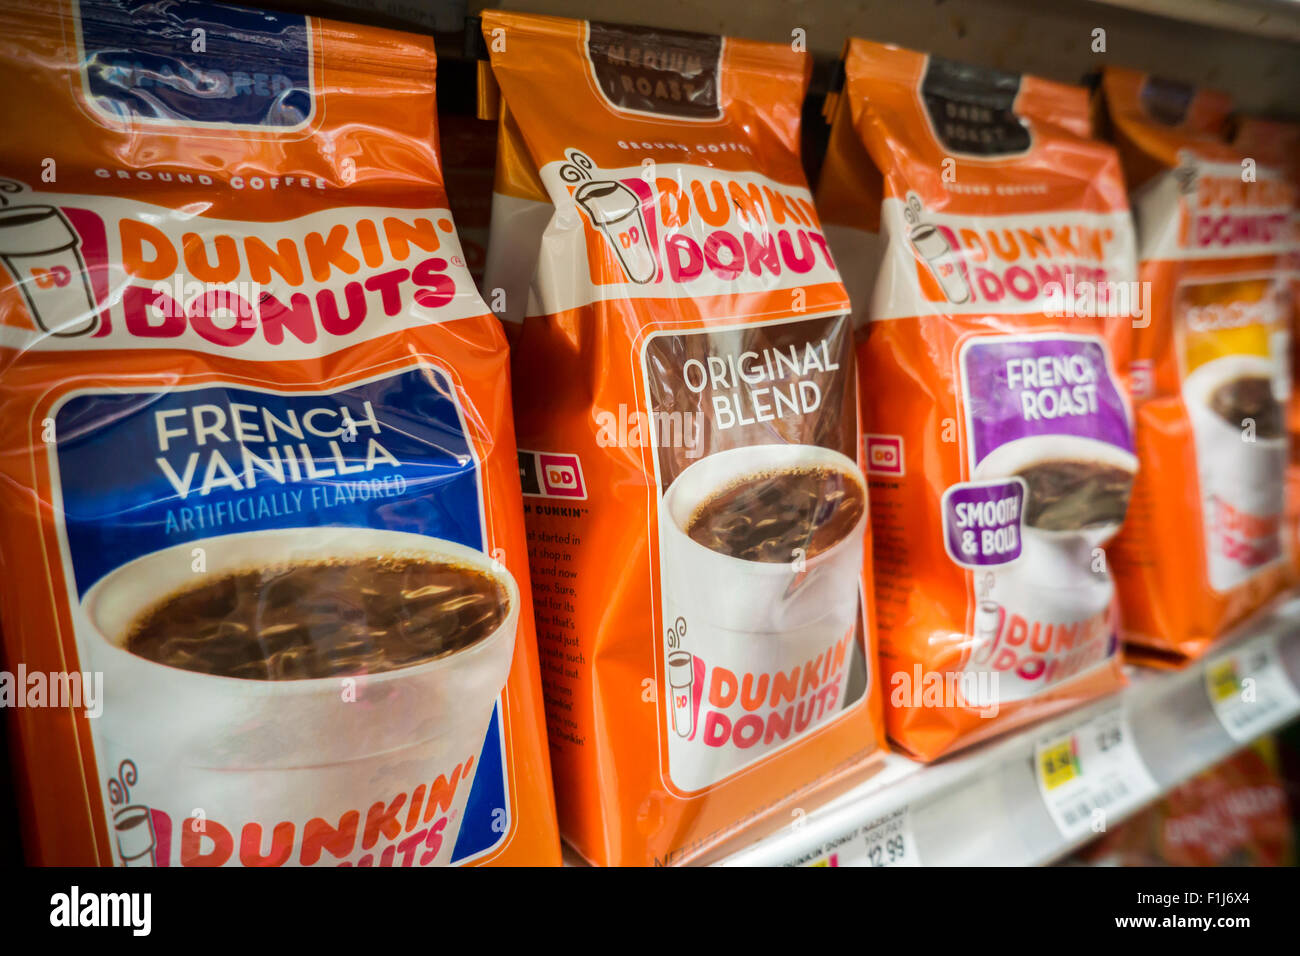 Eine Anzeige von Dunkin Donuts Kaffee auf einem Supermarktregal in New York  auf Samstag, 29. August 2015. J.m. Smucker Co. berichtete Kaffee-Geschäft  stieg um 12 Prozent zum ersten Mal in 11 Quartalen